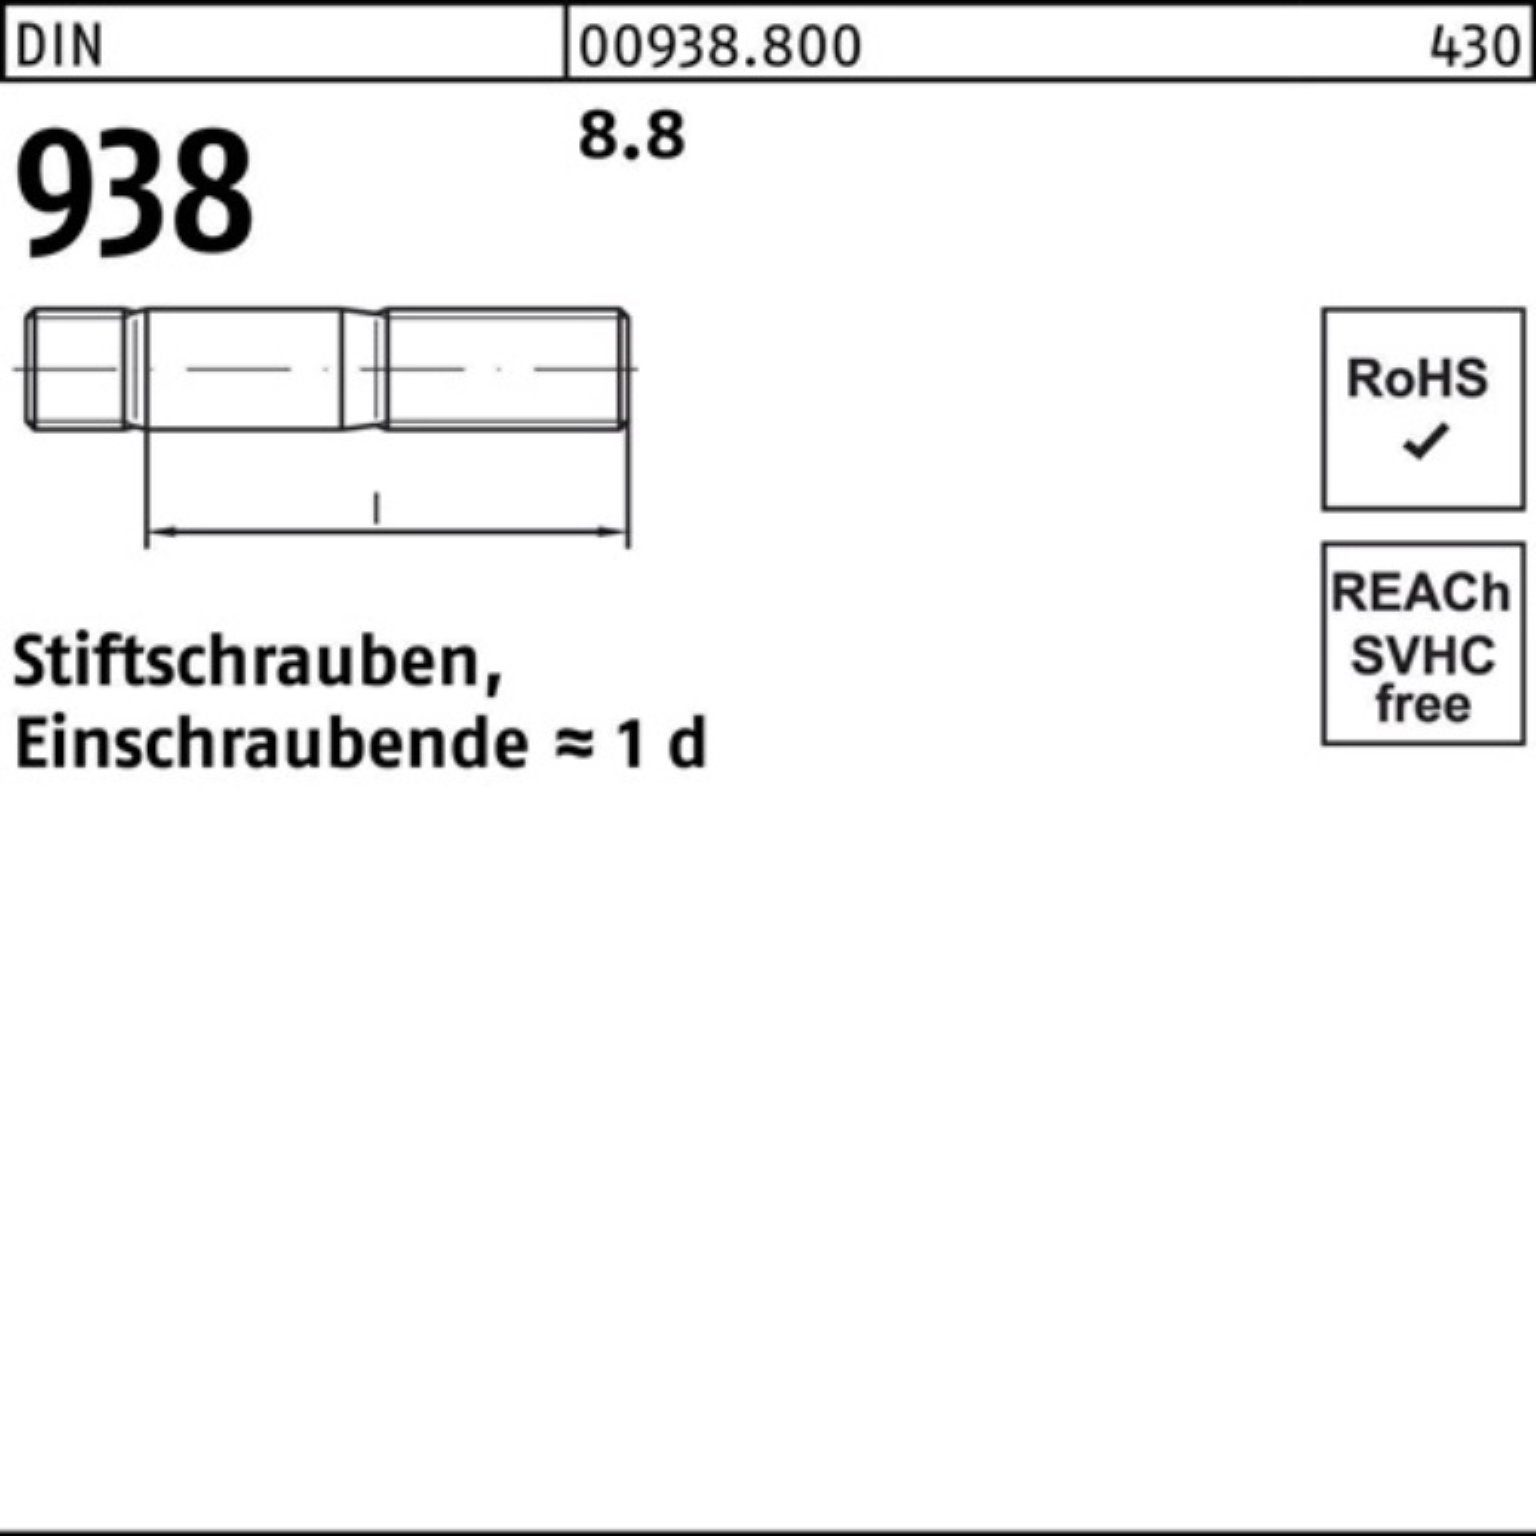 100er 8.8 Reyher Stiftschraube 85 Sti Stück Stiftschraube 938 25 8.8 938 DIN DIN Pack M12x